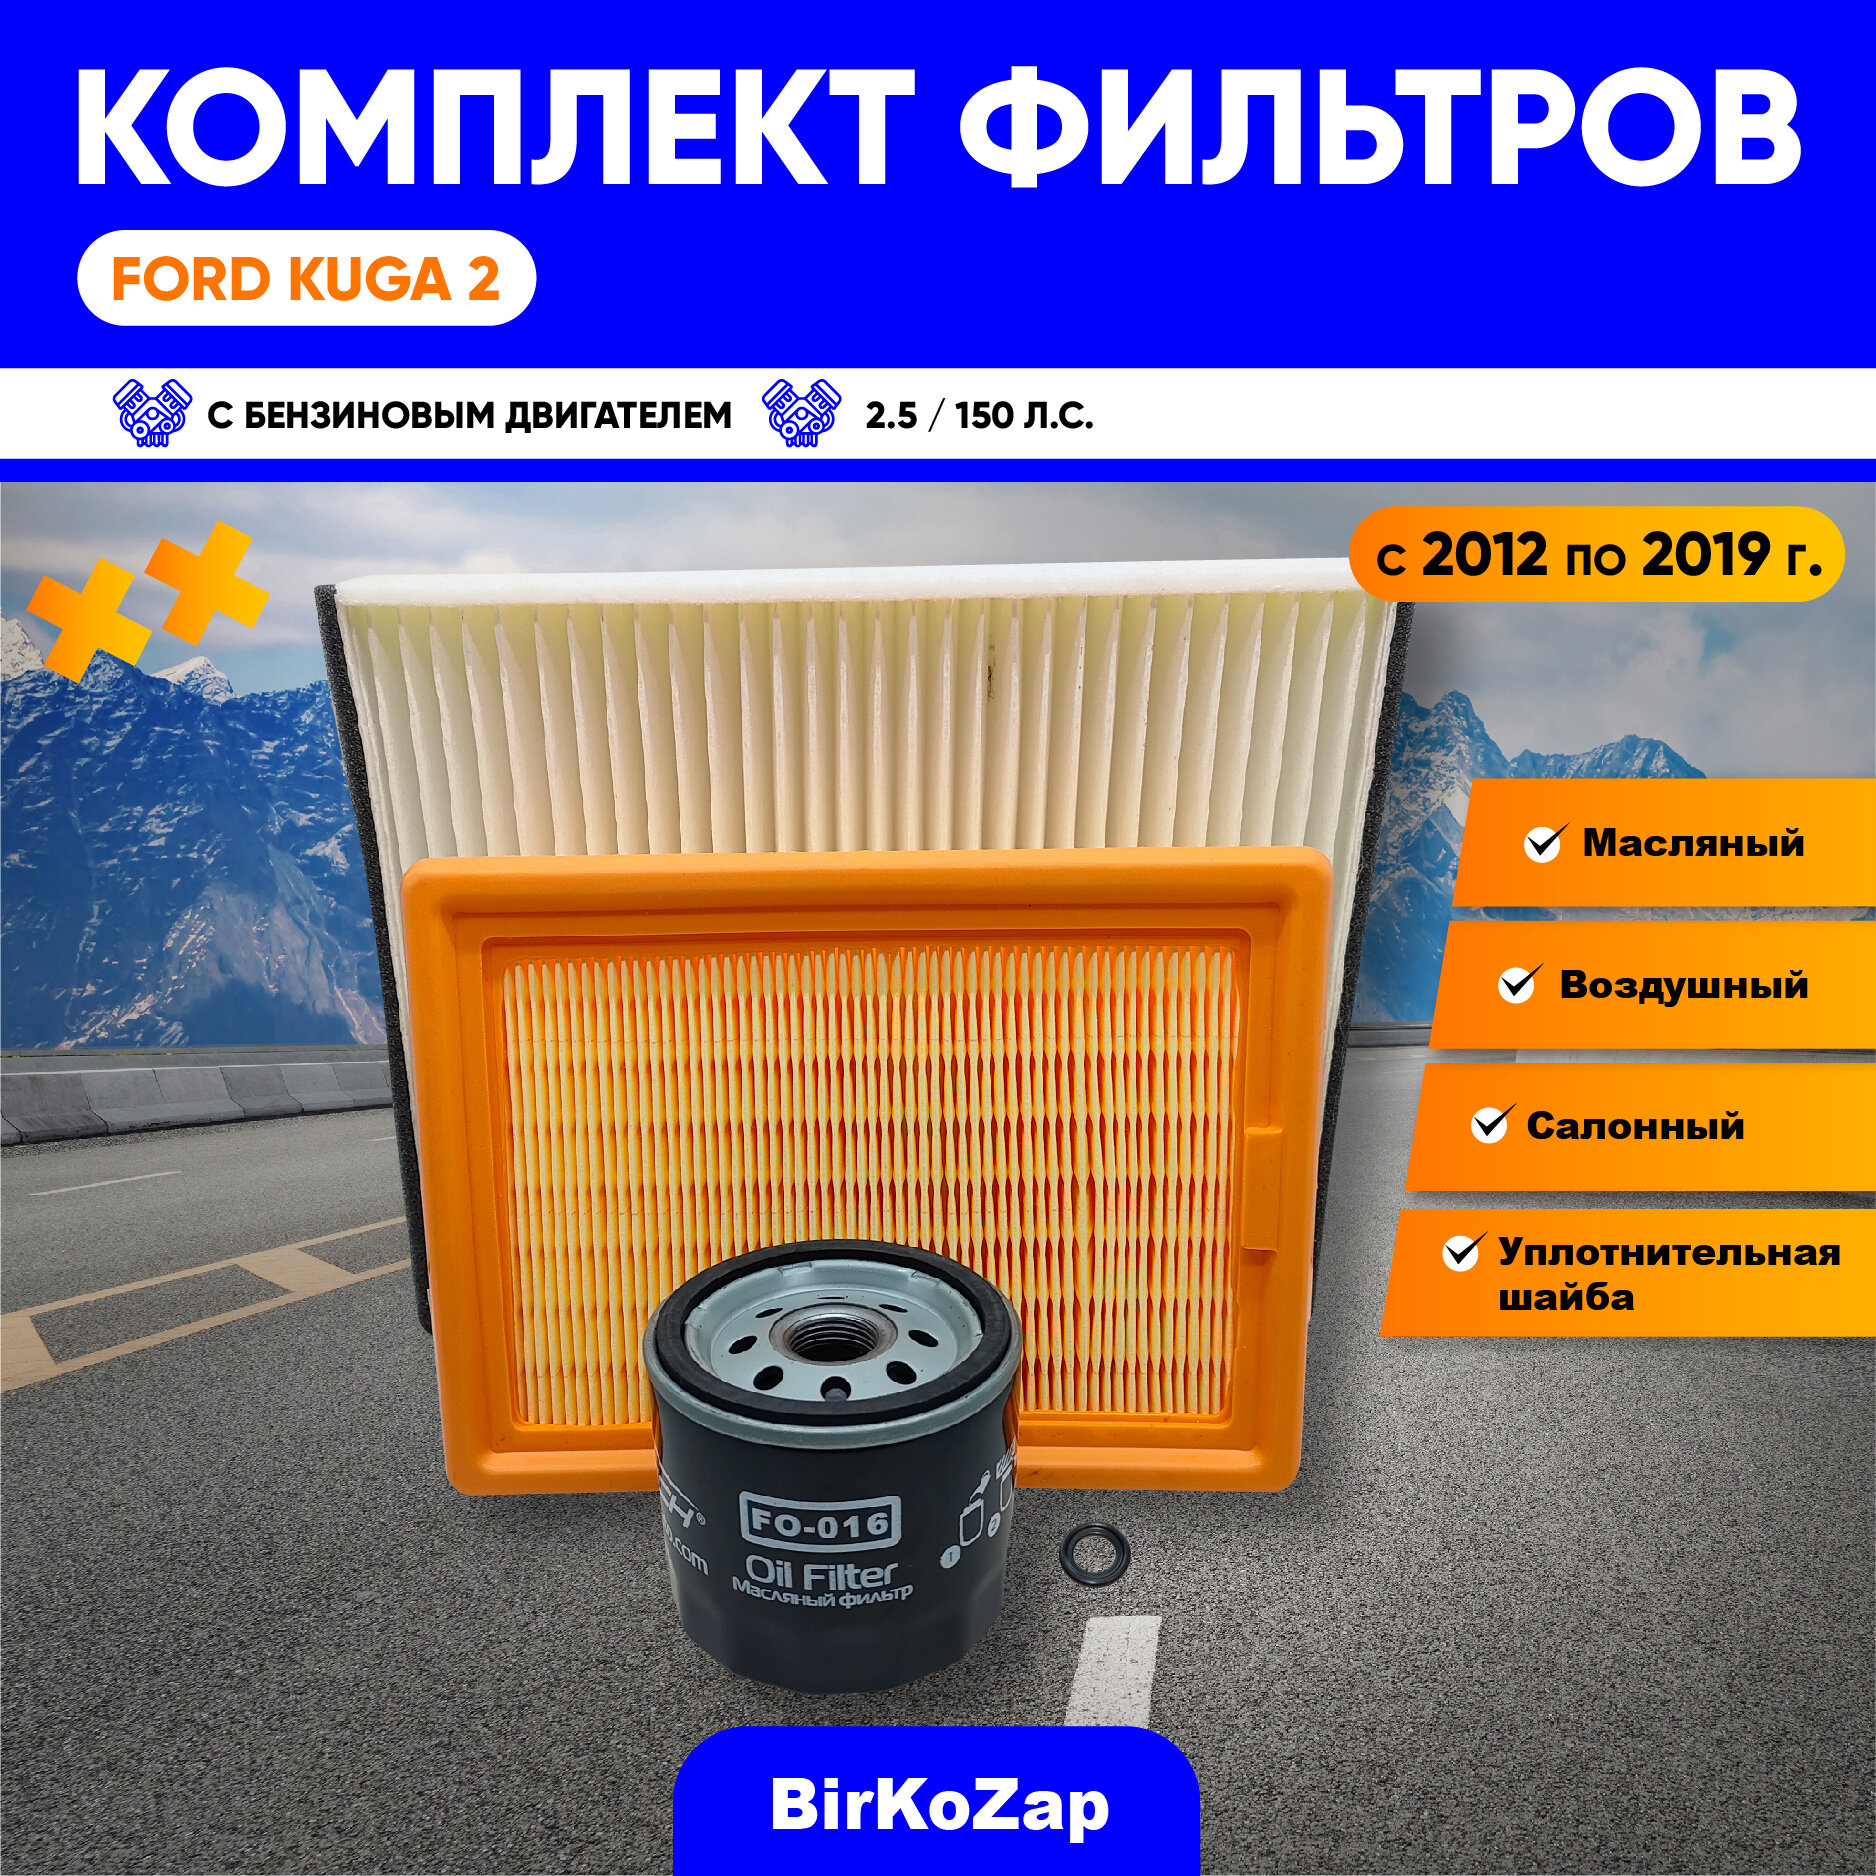 Комплект фильтров для Ford Kuga II, 2.5 - 150 л. с (фильтр масляный, воздушный, салонный)